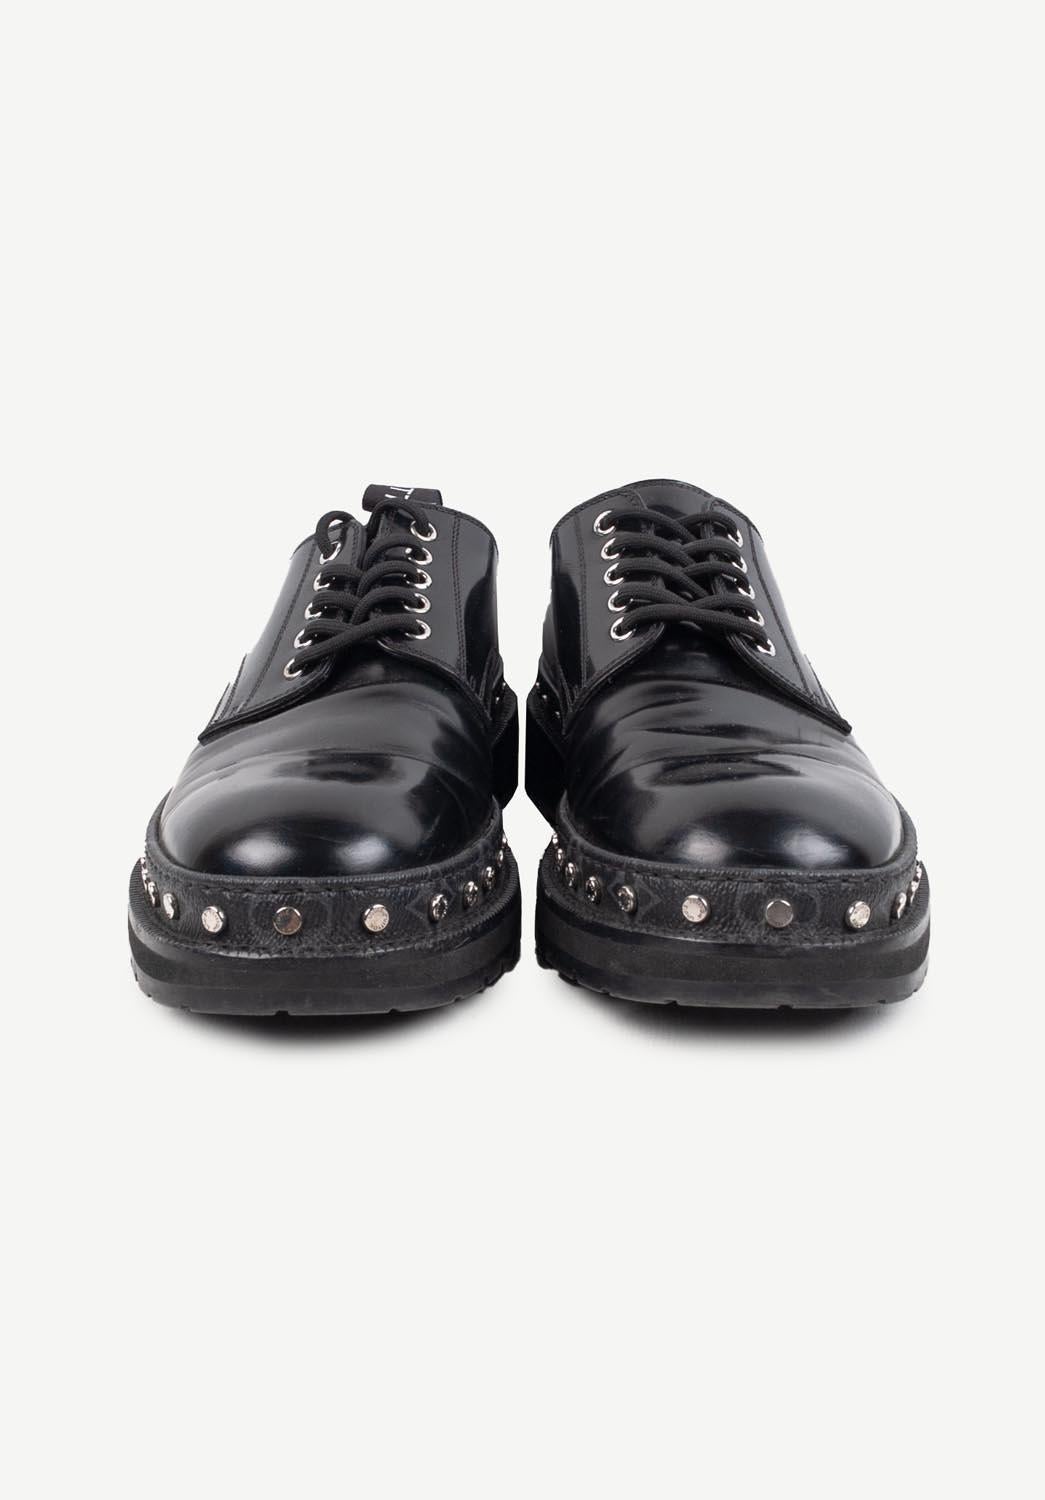 L'article mis en vente est 100% authentique Louis Vuitton Men Shoes Size 9 S277
Couleur : Noir
(La couleur réelle peut varier légèrement en raison de l'interprétation individuelle de l'écran de l'ordinateur).
MATERIAL : Cuir
Taille de l'étiquette :